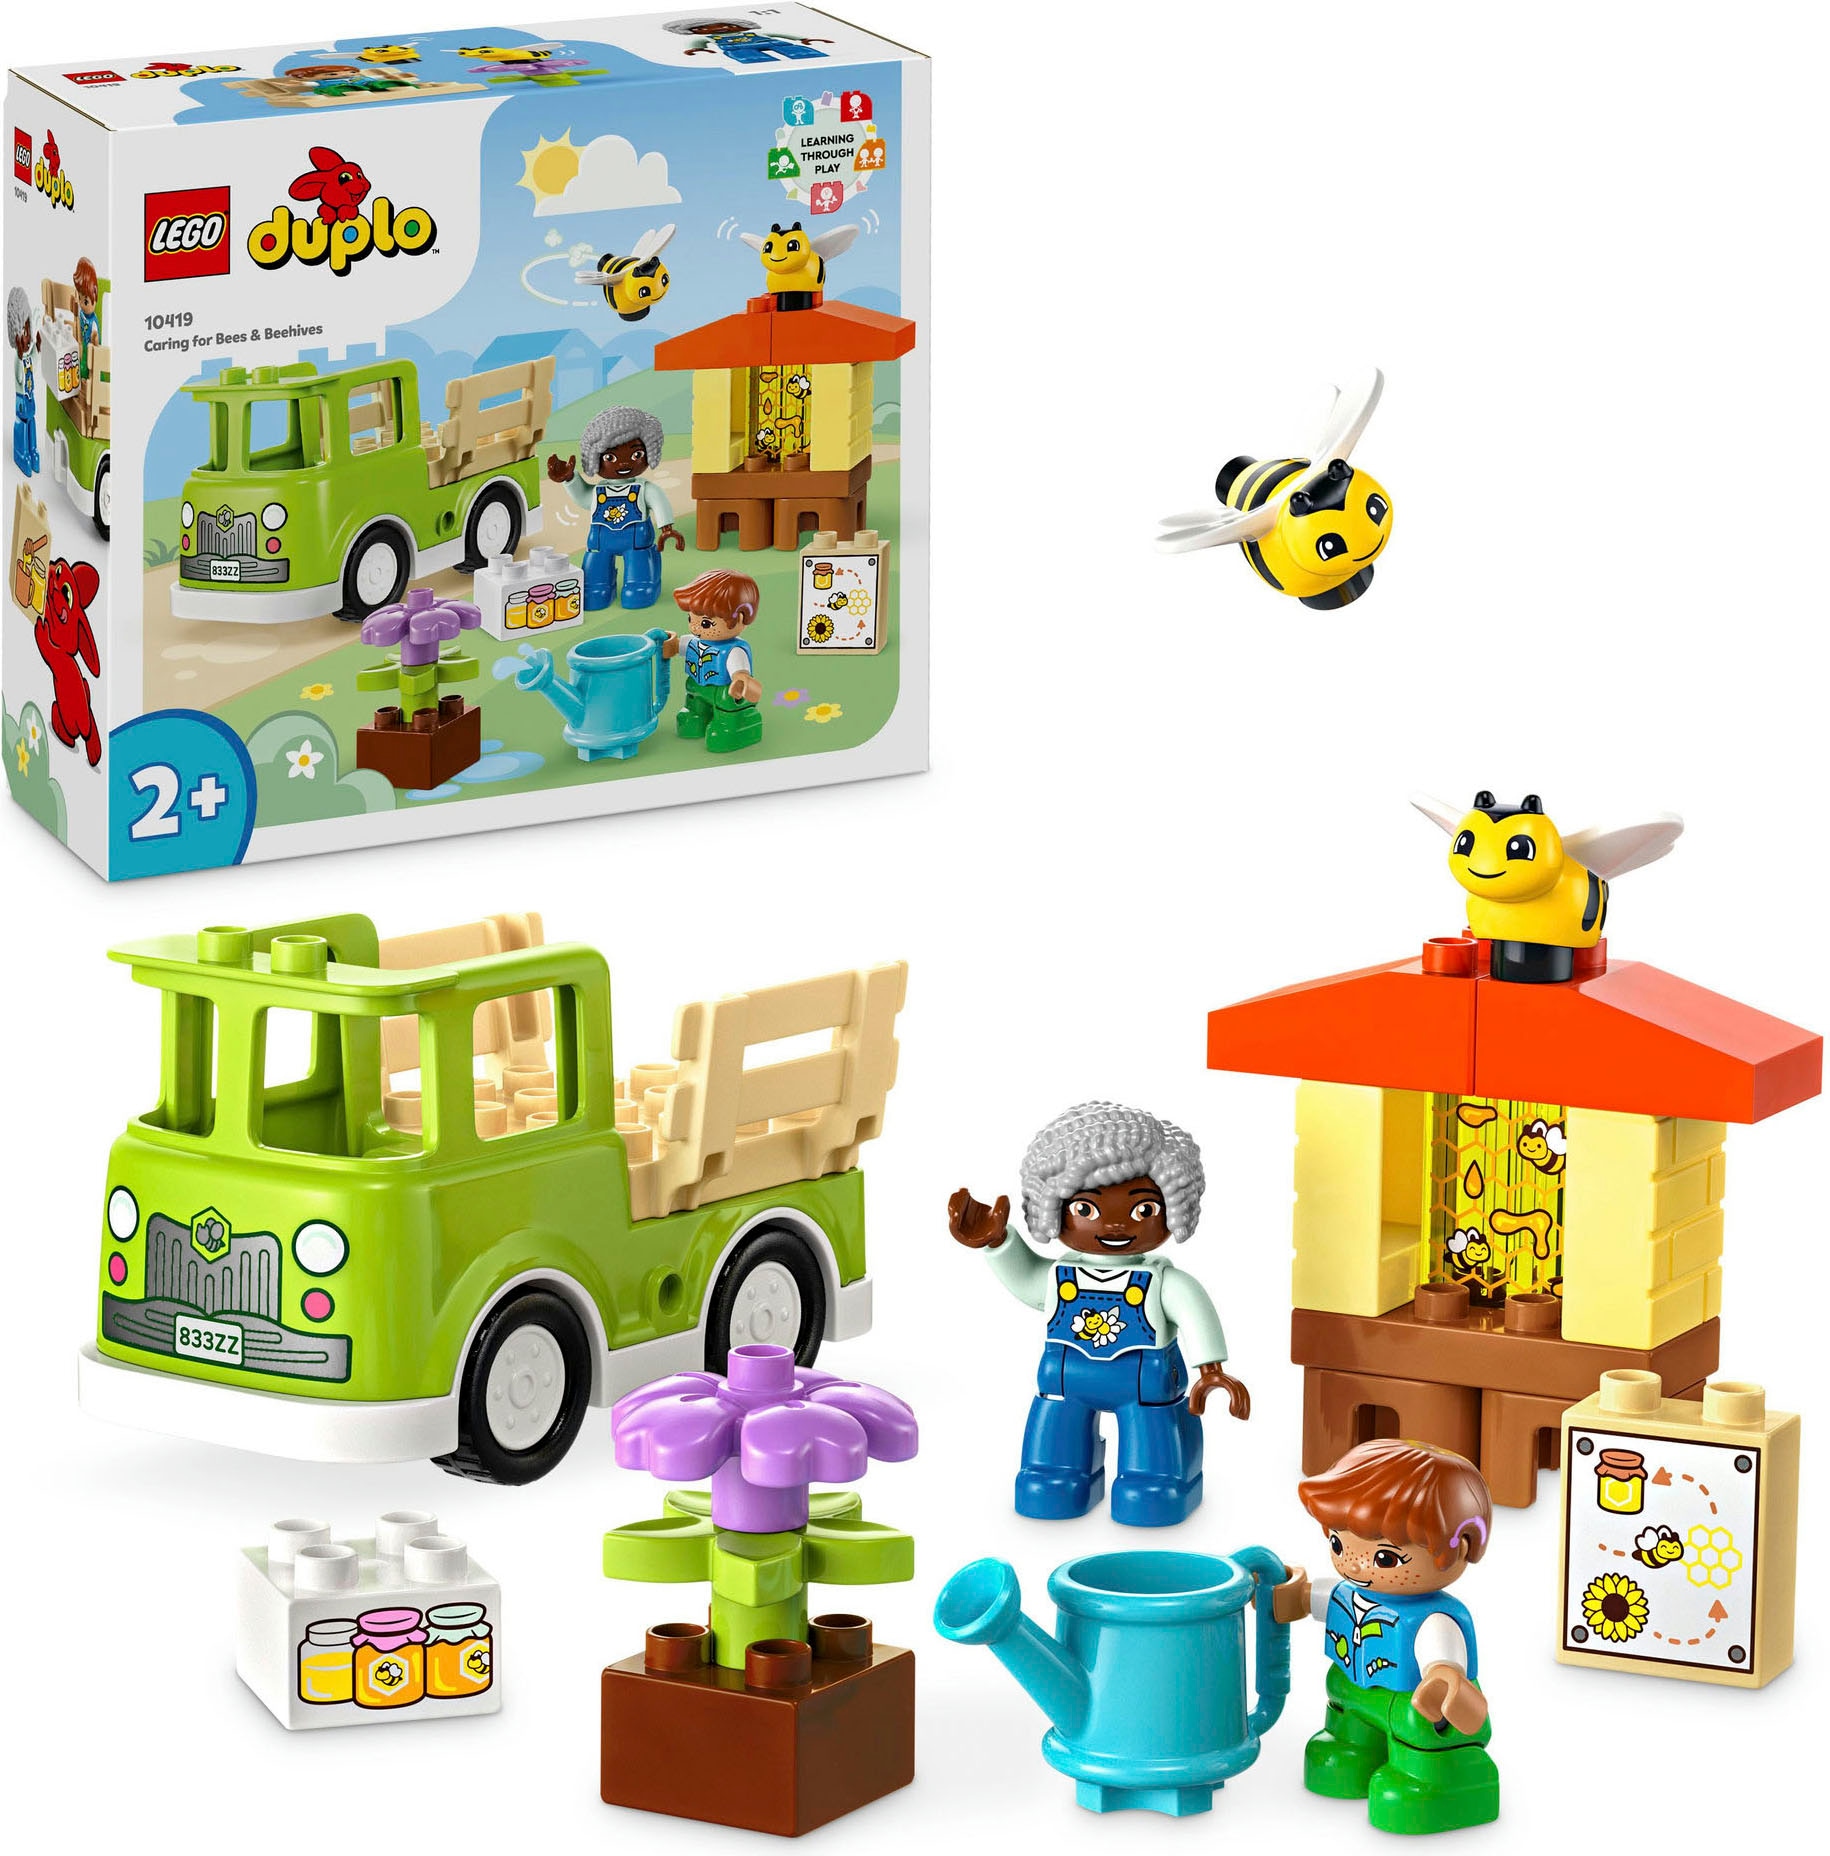 Made und »Imkerei Konstruktionsspielsteine bei (22 LEGO® bestellen (10419), Bienenstöcke DUPLO OTTO Town«, St.), in Europe LEGO